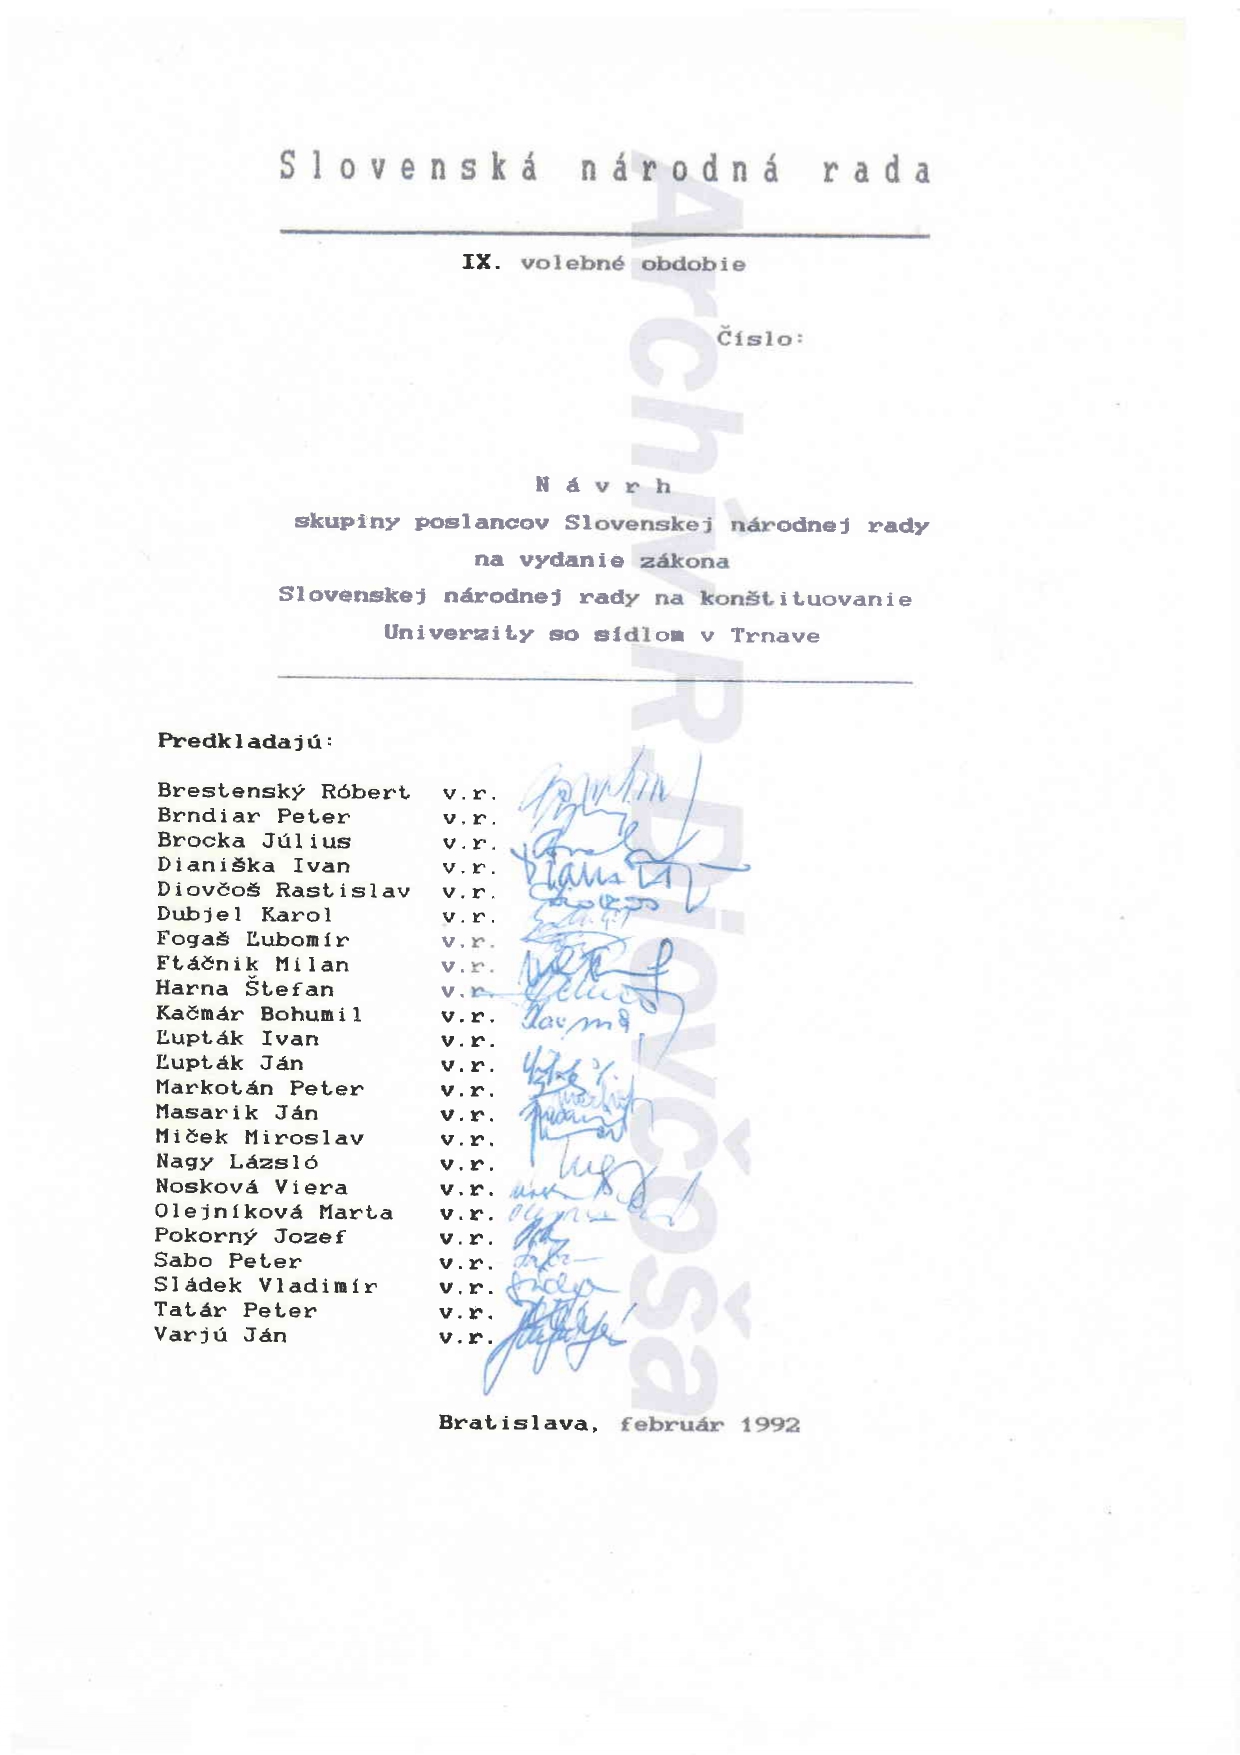 Návrh zákona na zriadenie Trnavskej univerzity podpísali poslanci vo februári, ale predložený bol 6. marca 1992